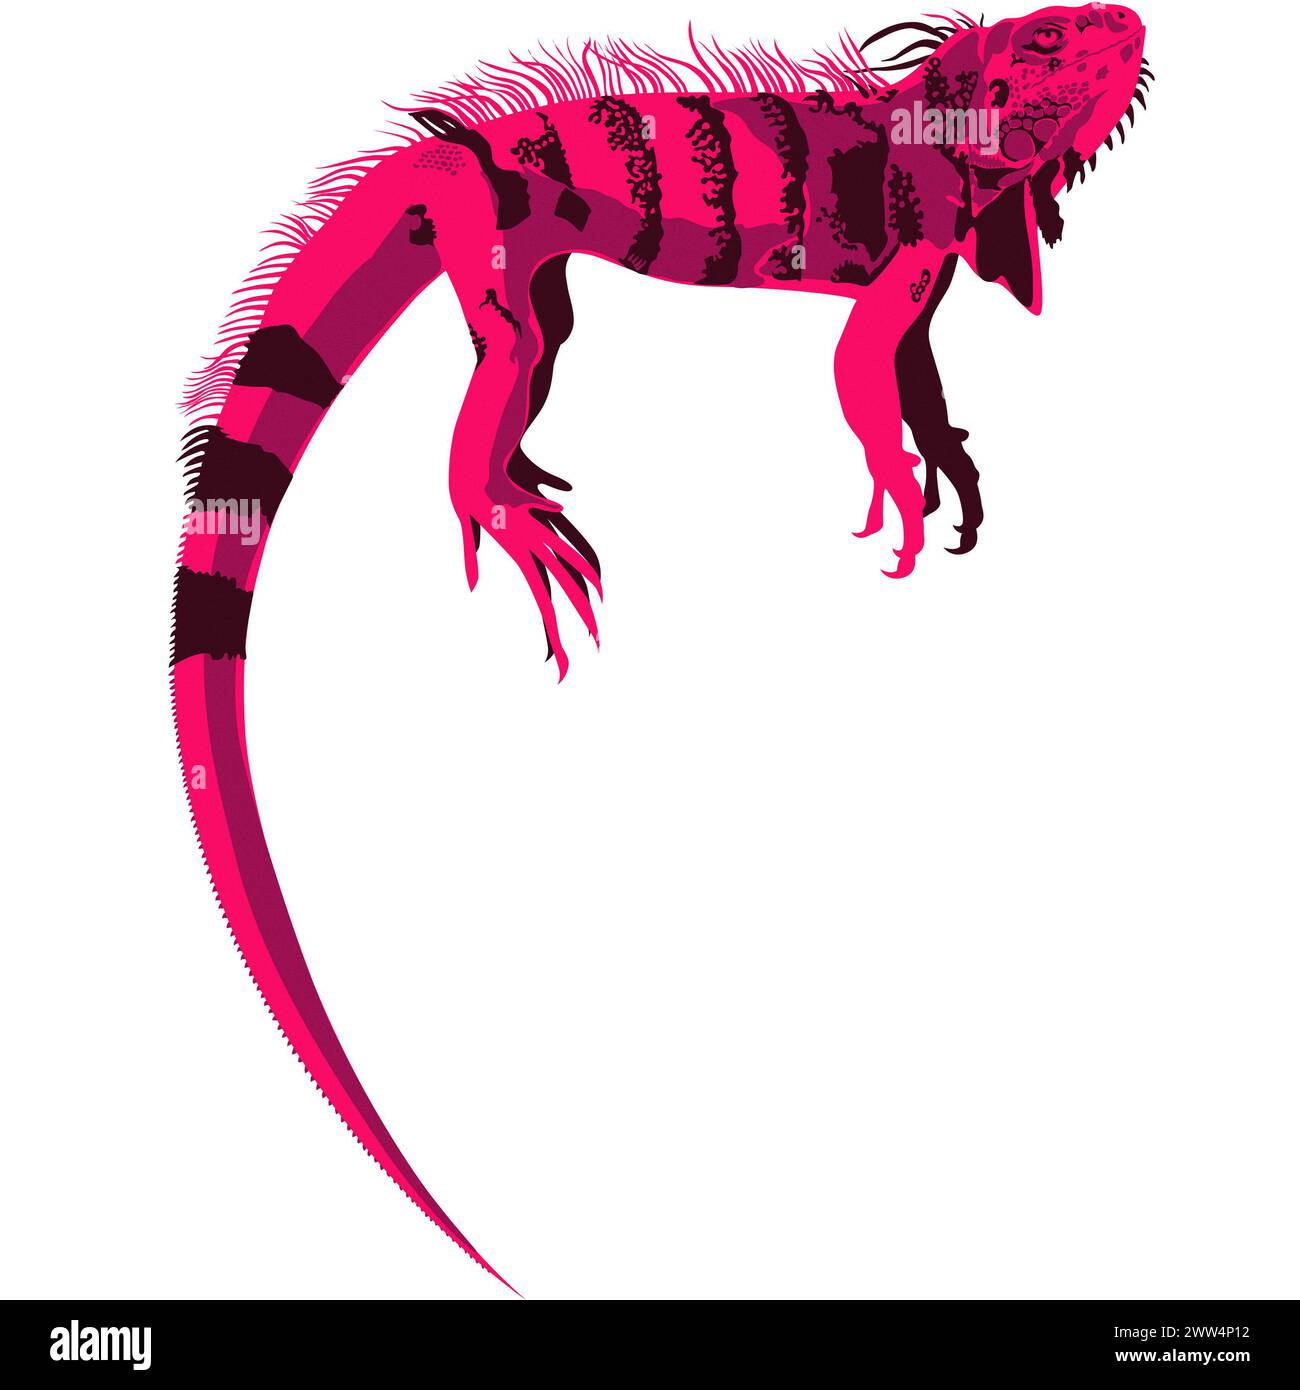 Concept animal créatif - illustration artistique d'un grand iguane reposant sur une branche - Ilustración artística de una gran iguana descansando Banque D'Images